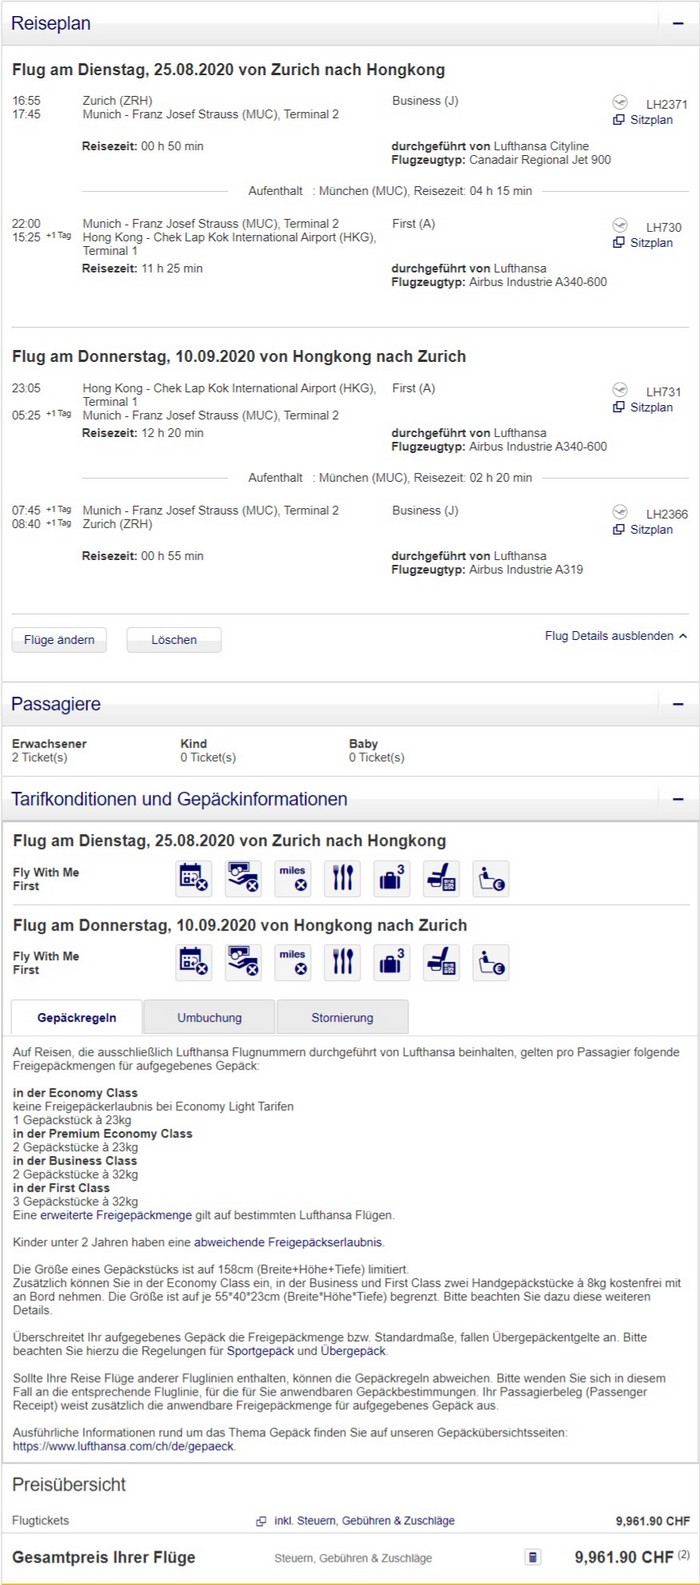 Preisbeispiel für Partnertarif von Zürich nach Hong Kong in der Lufthansa First-Class